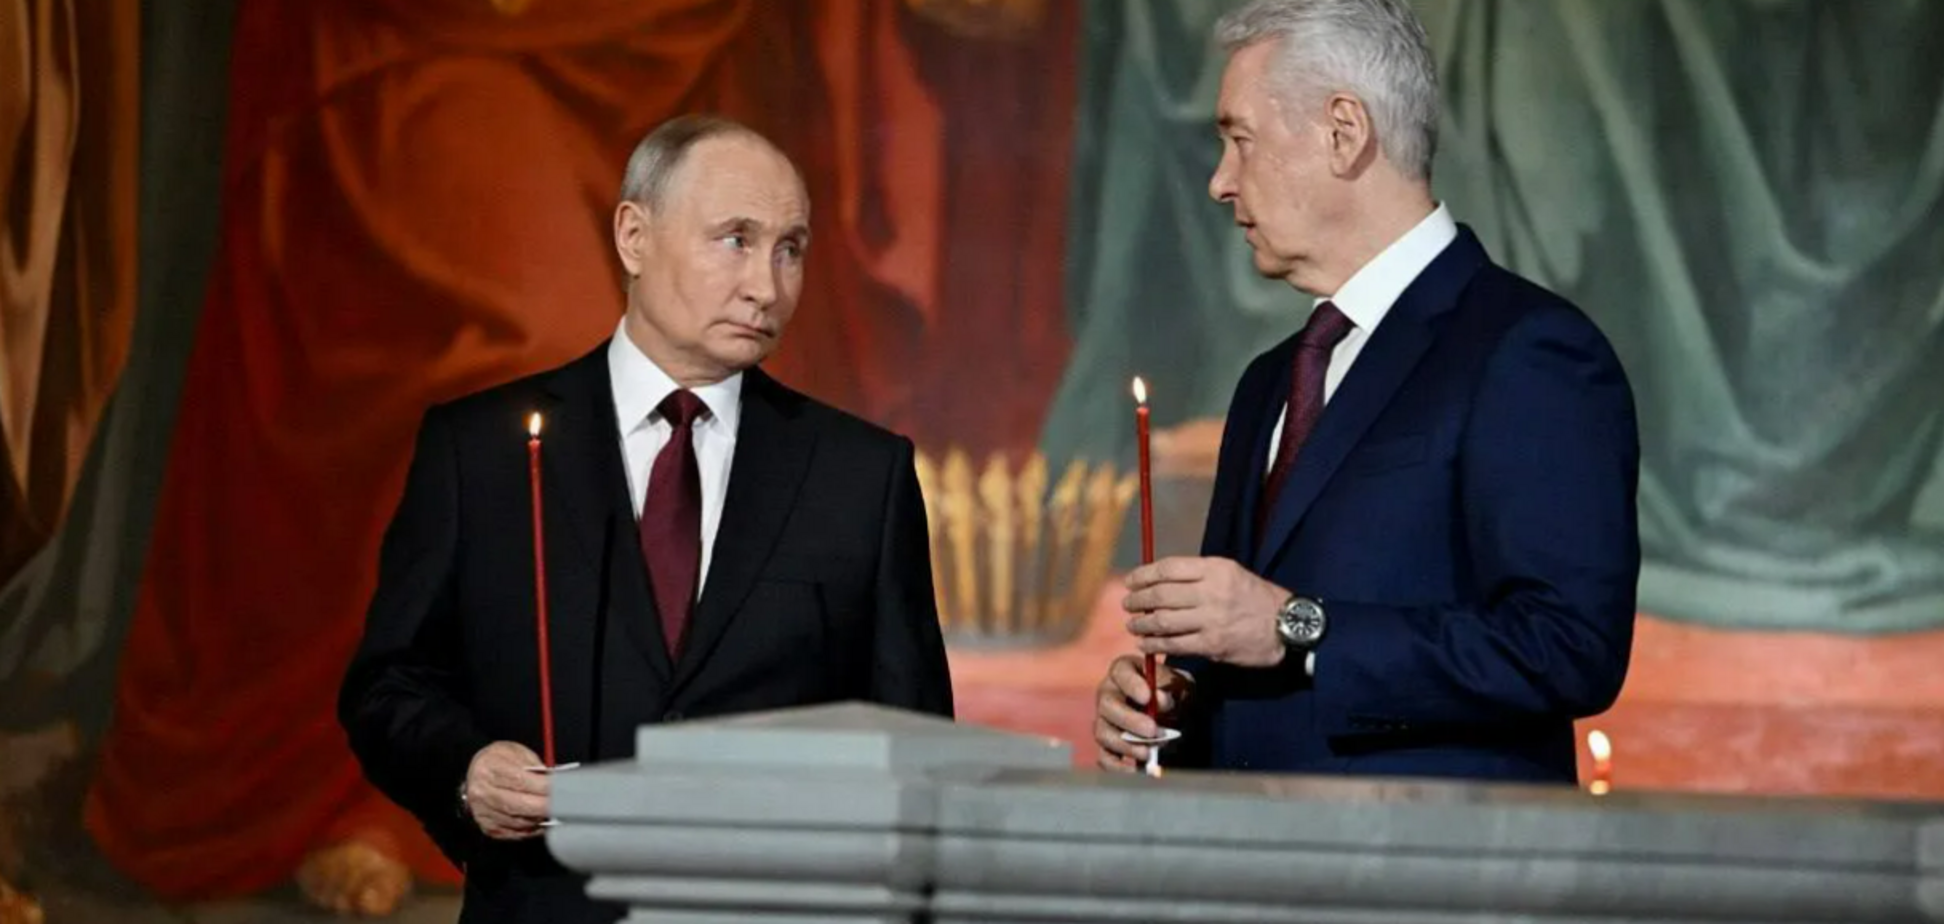 Российские элиты обеспокоены, началось соперничество: в ISW рассказали о настроениях в РФ перед 'инаугурацией' Путина